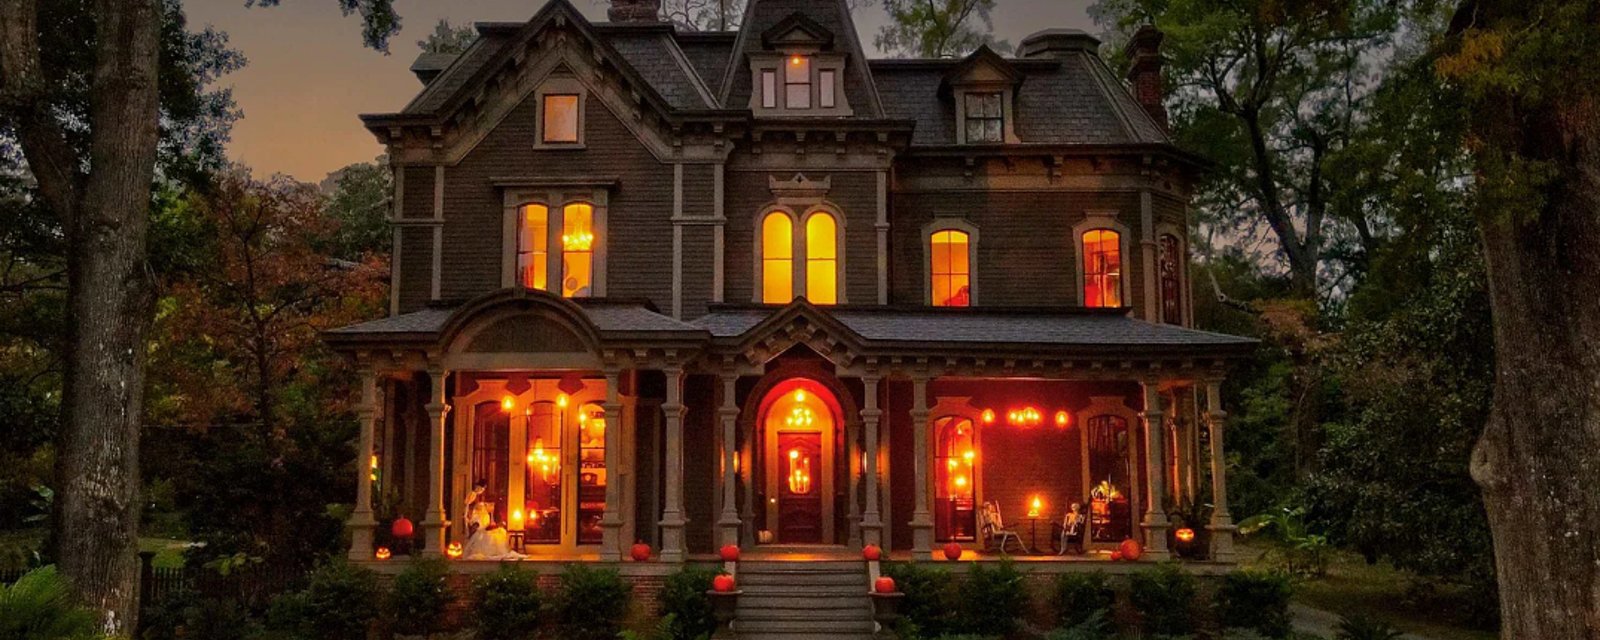 La maison de la série Stranger Things est à vendre pour 1,5 million de dollars